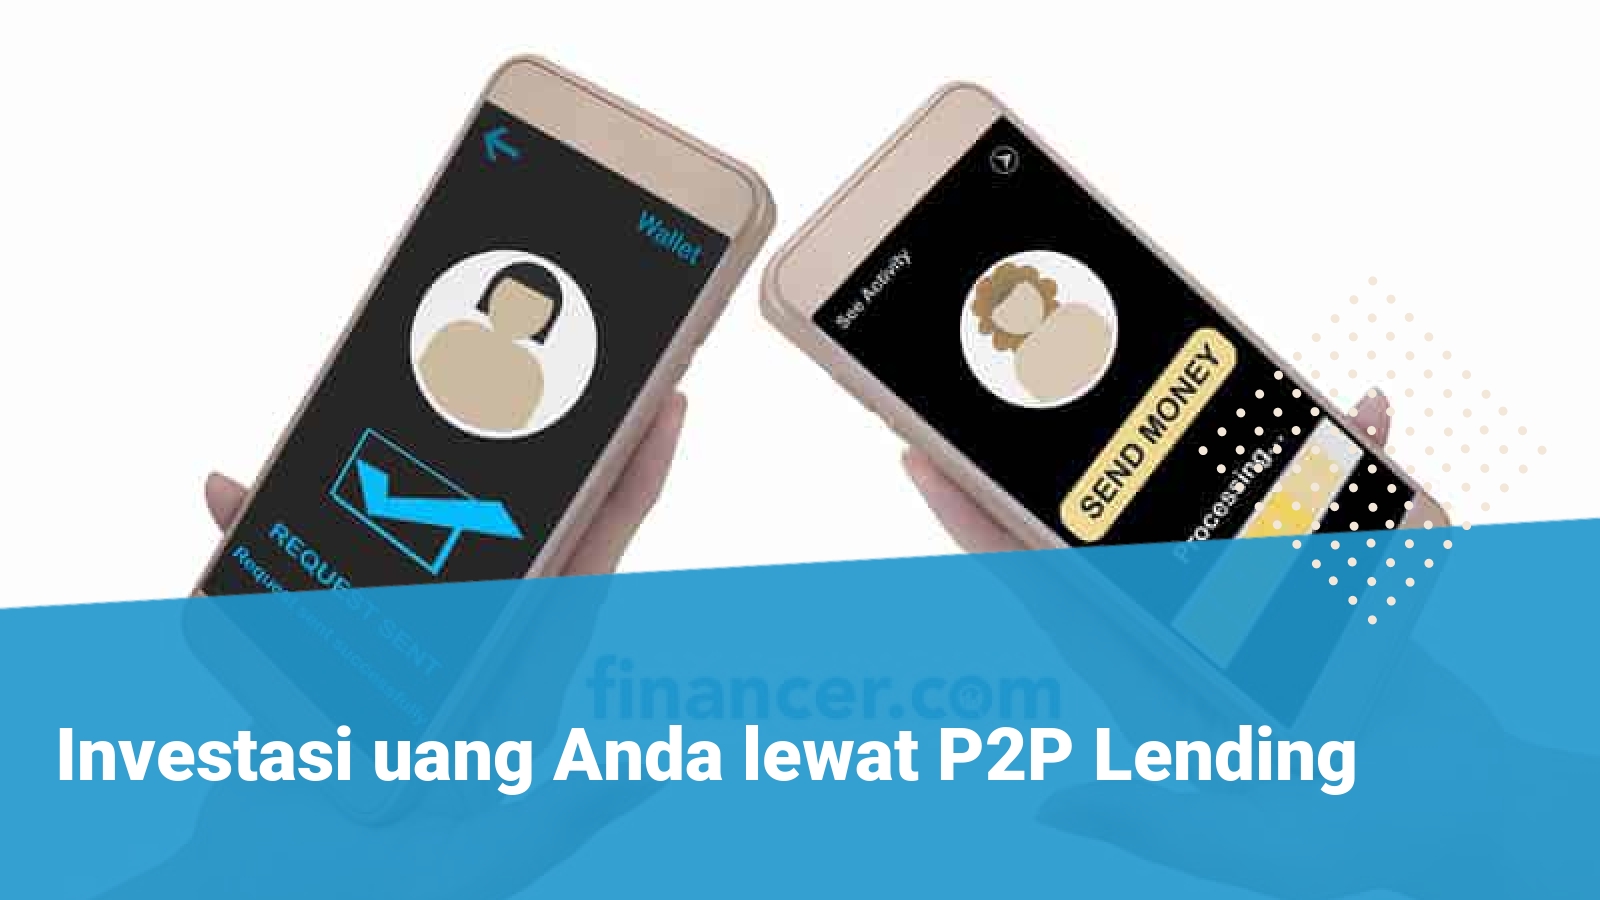 P2P Lending - Financer.com